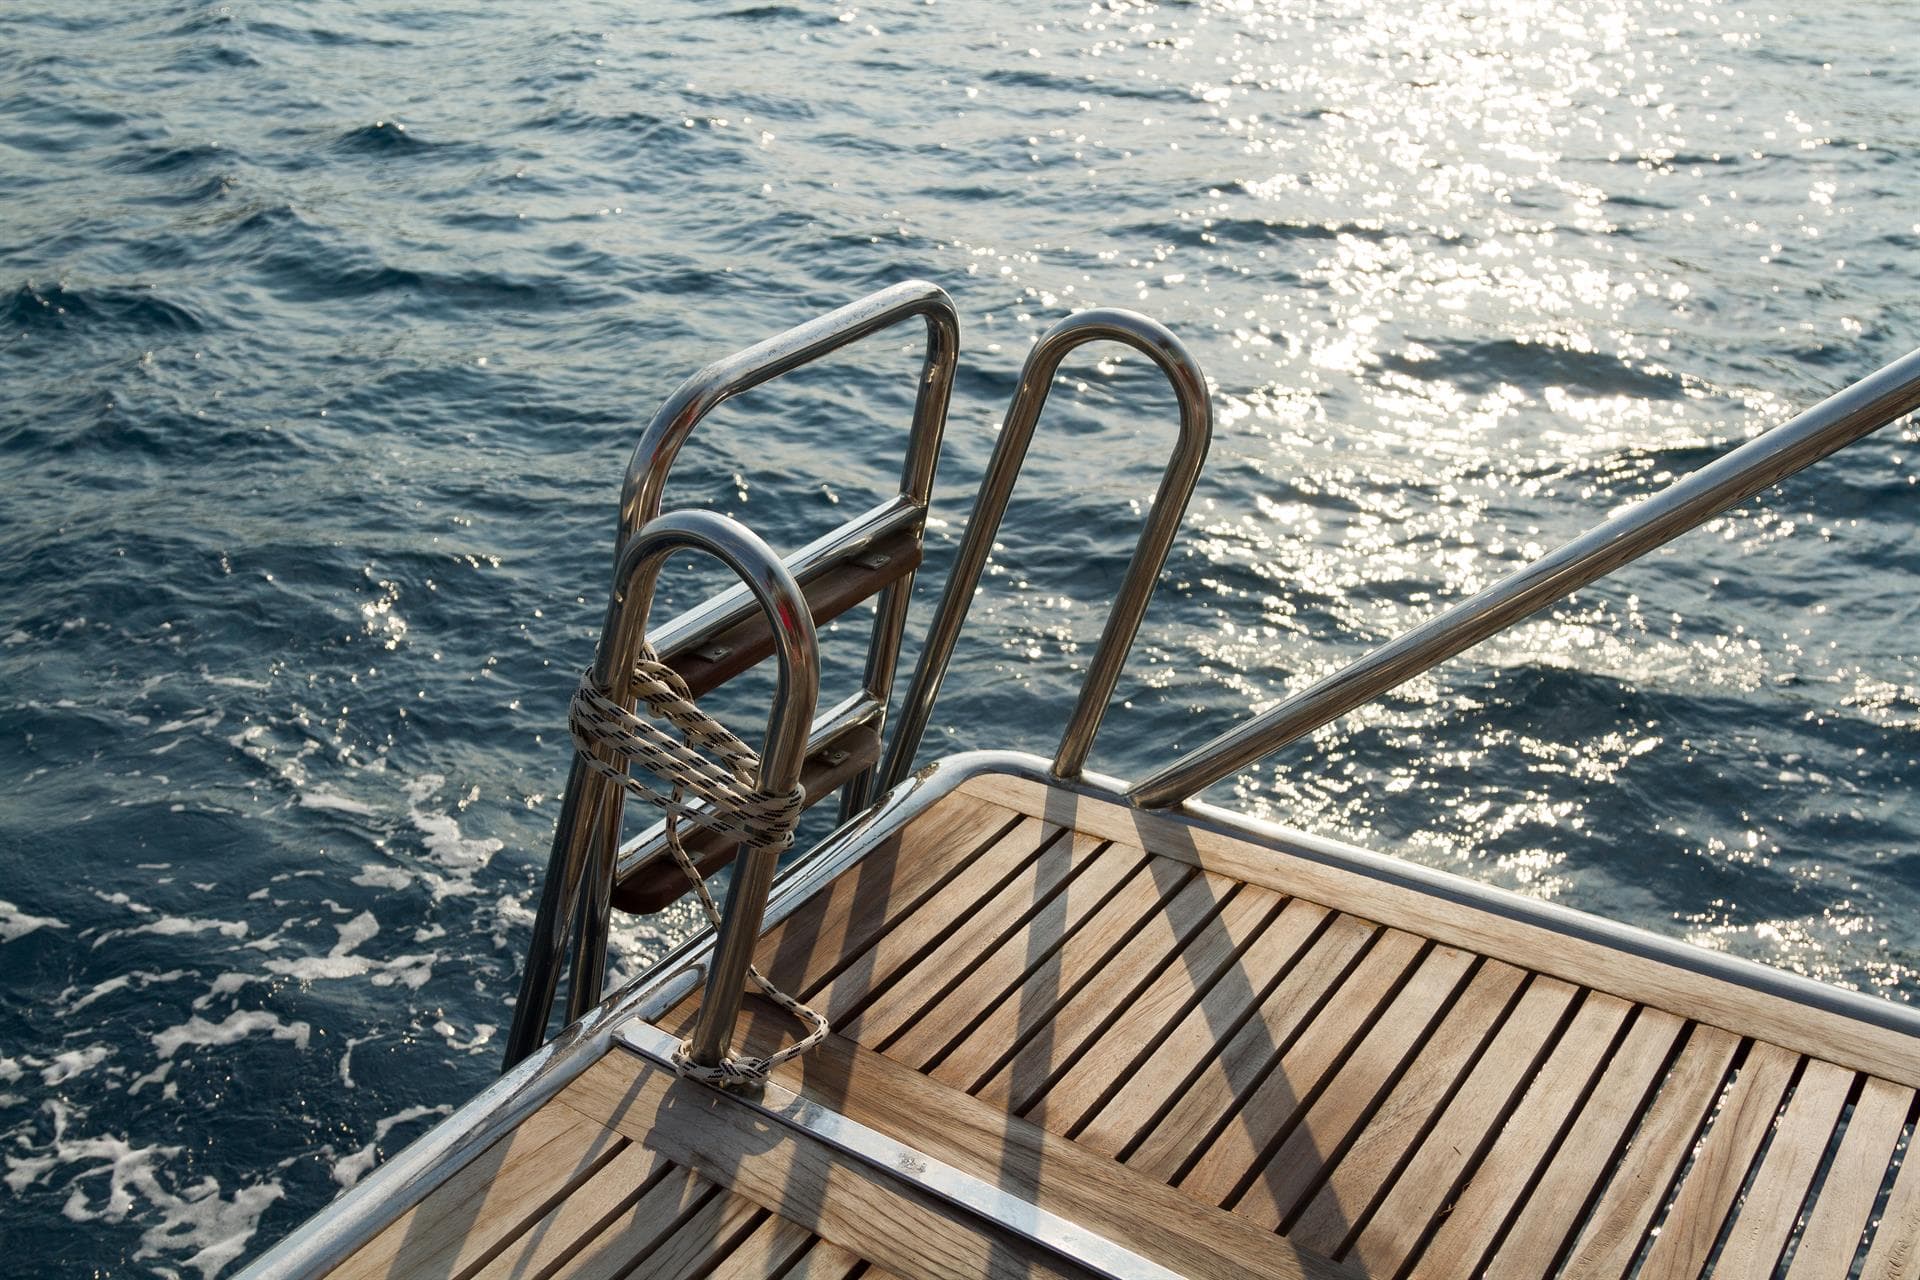 Hazte con una escalera de acero inoxidable para tu barco y mejora su accesibilidad